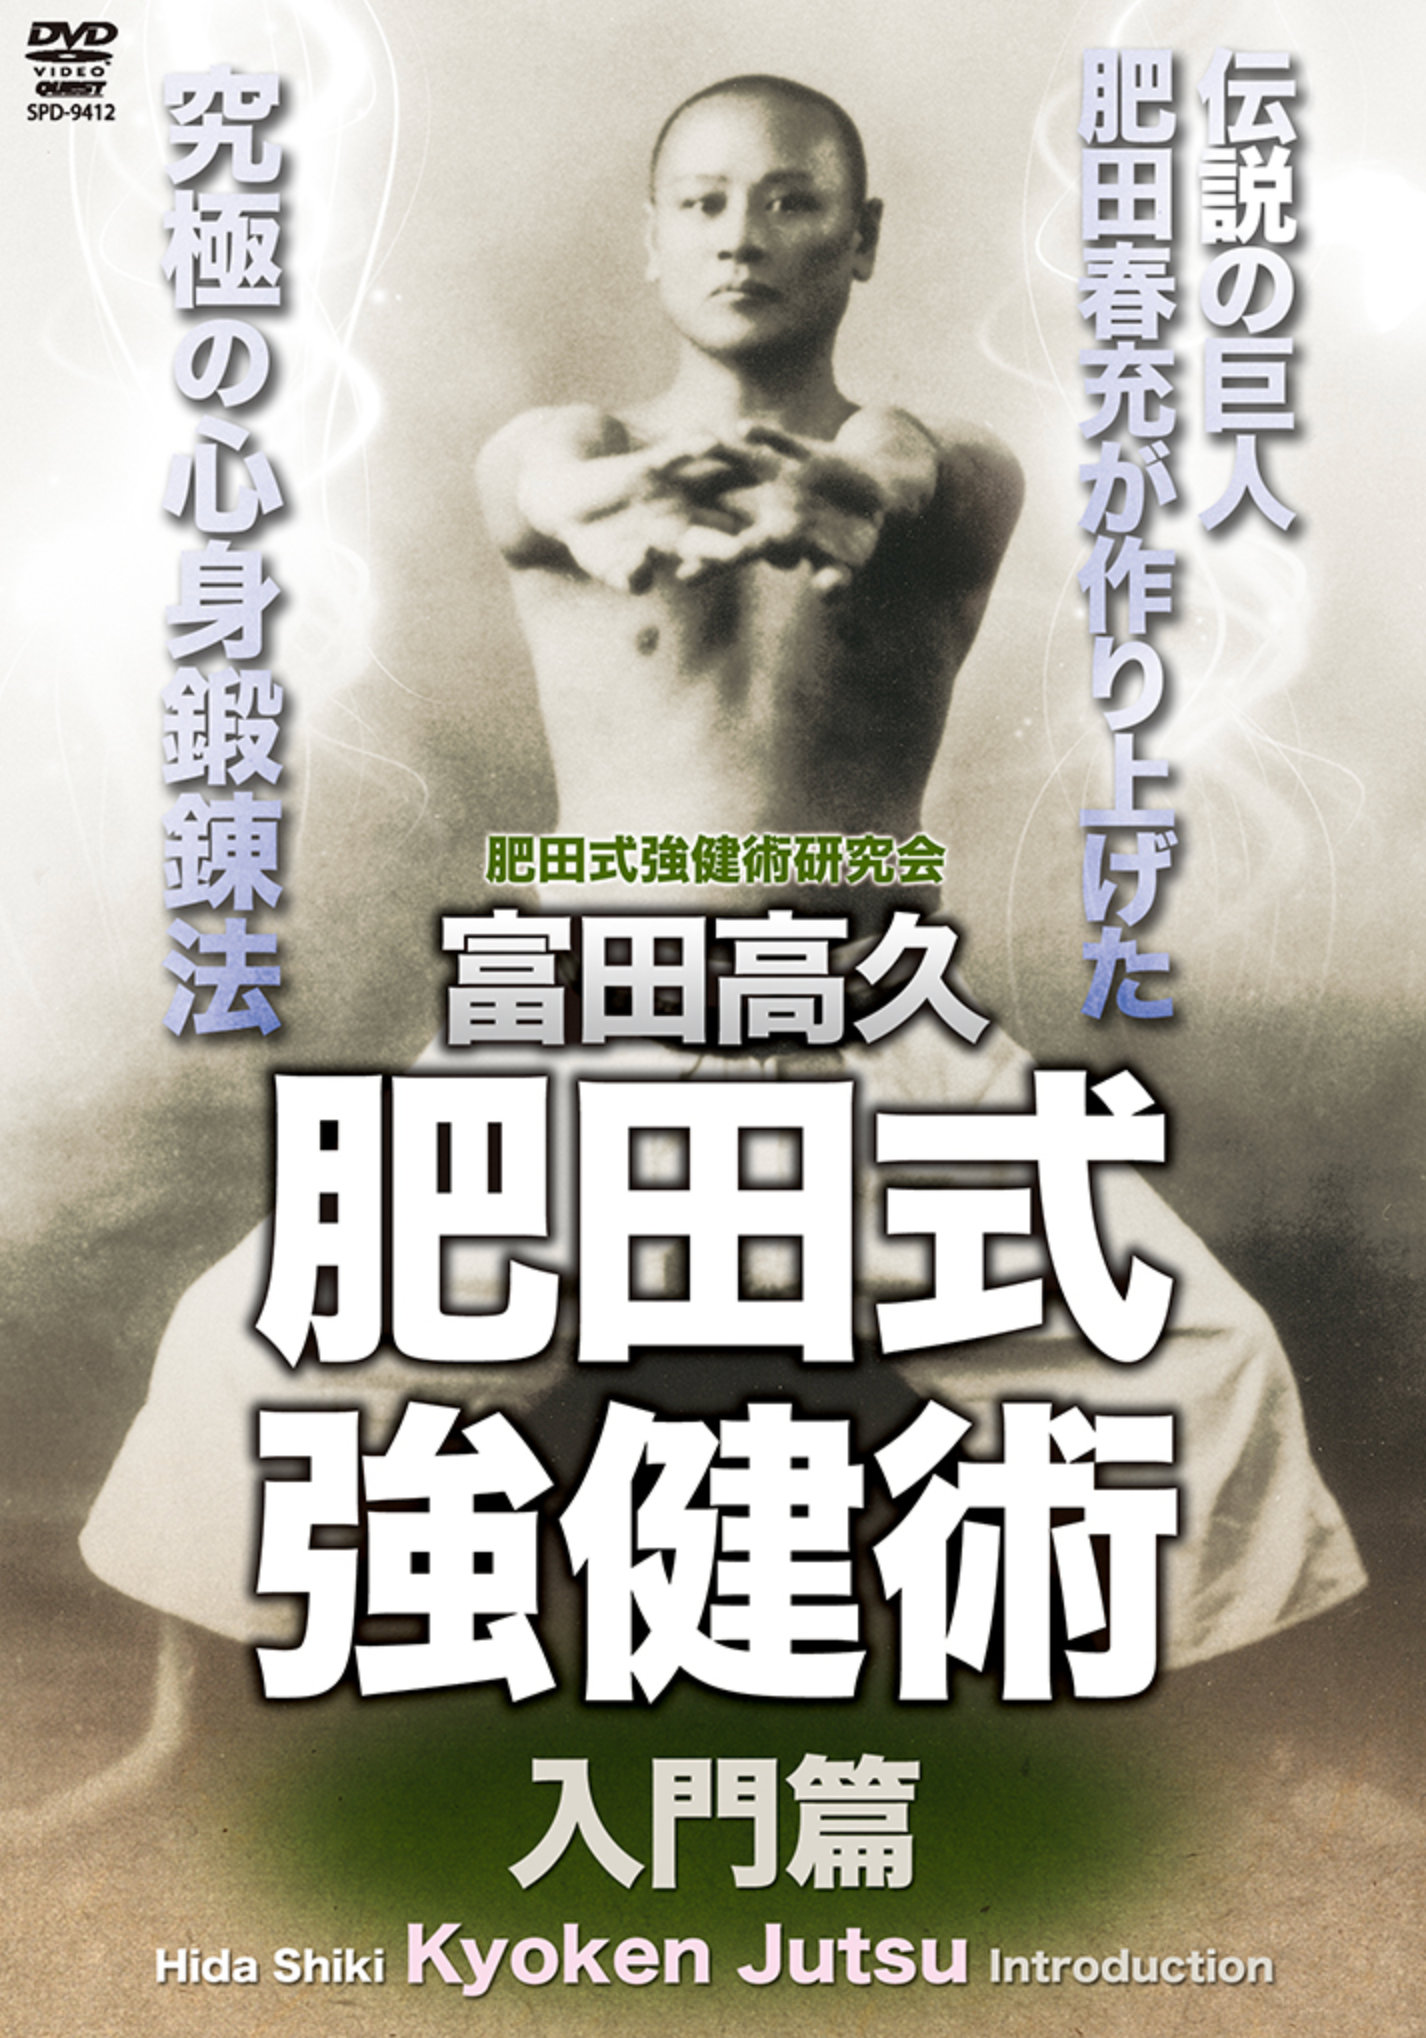 Intro to Hida Shiki Kyoken Jutsu DVD by Takahisa Tomita - Budovideos Inc